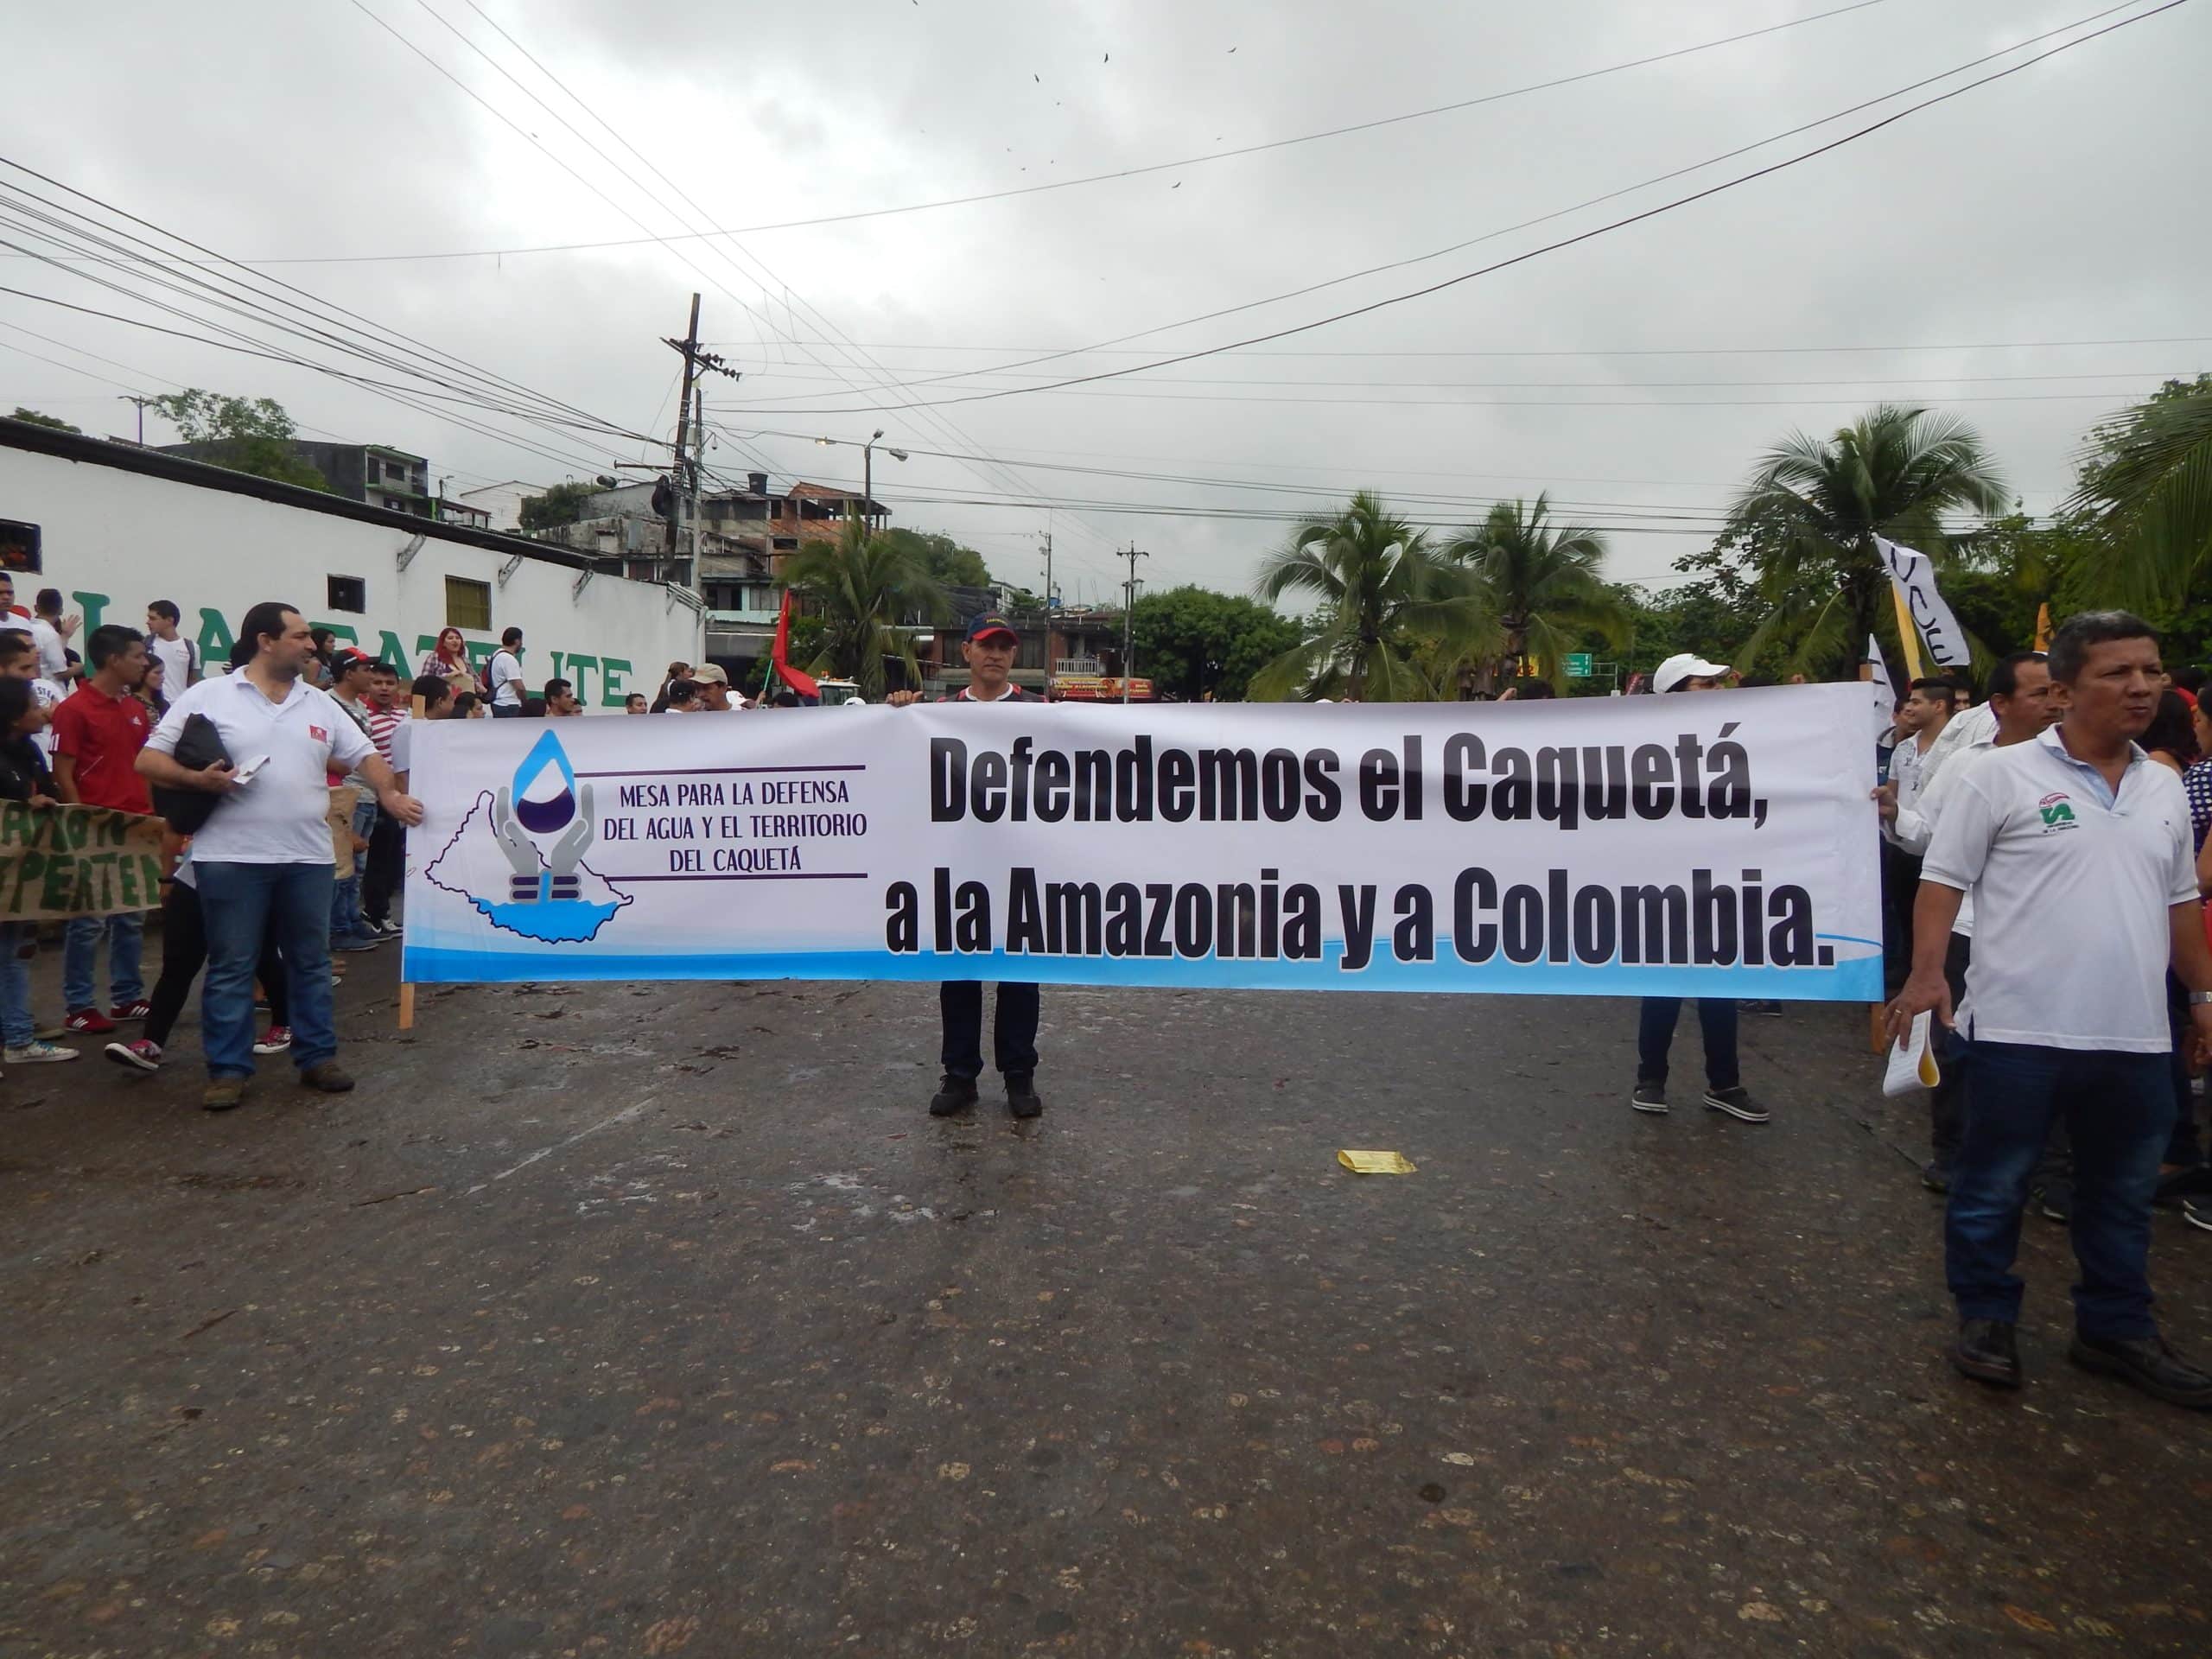 ANÁLISIS: El malestar social amenaza las operaciones petroleras en Colombia